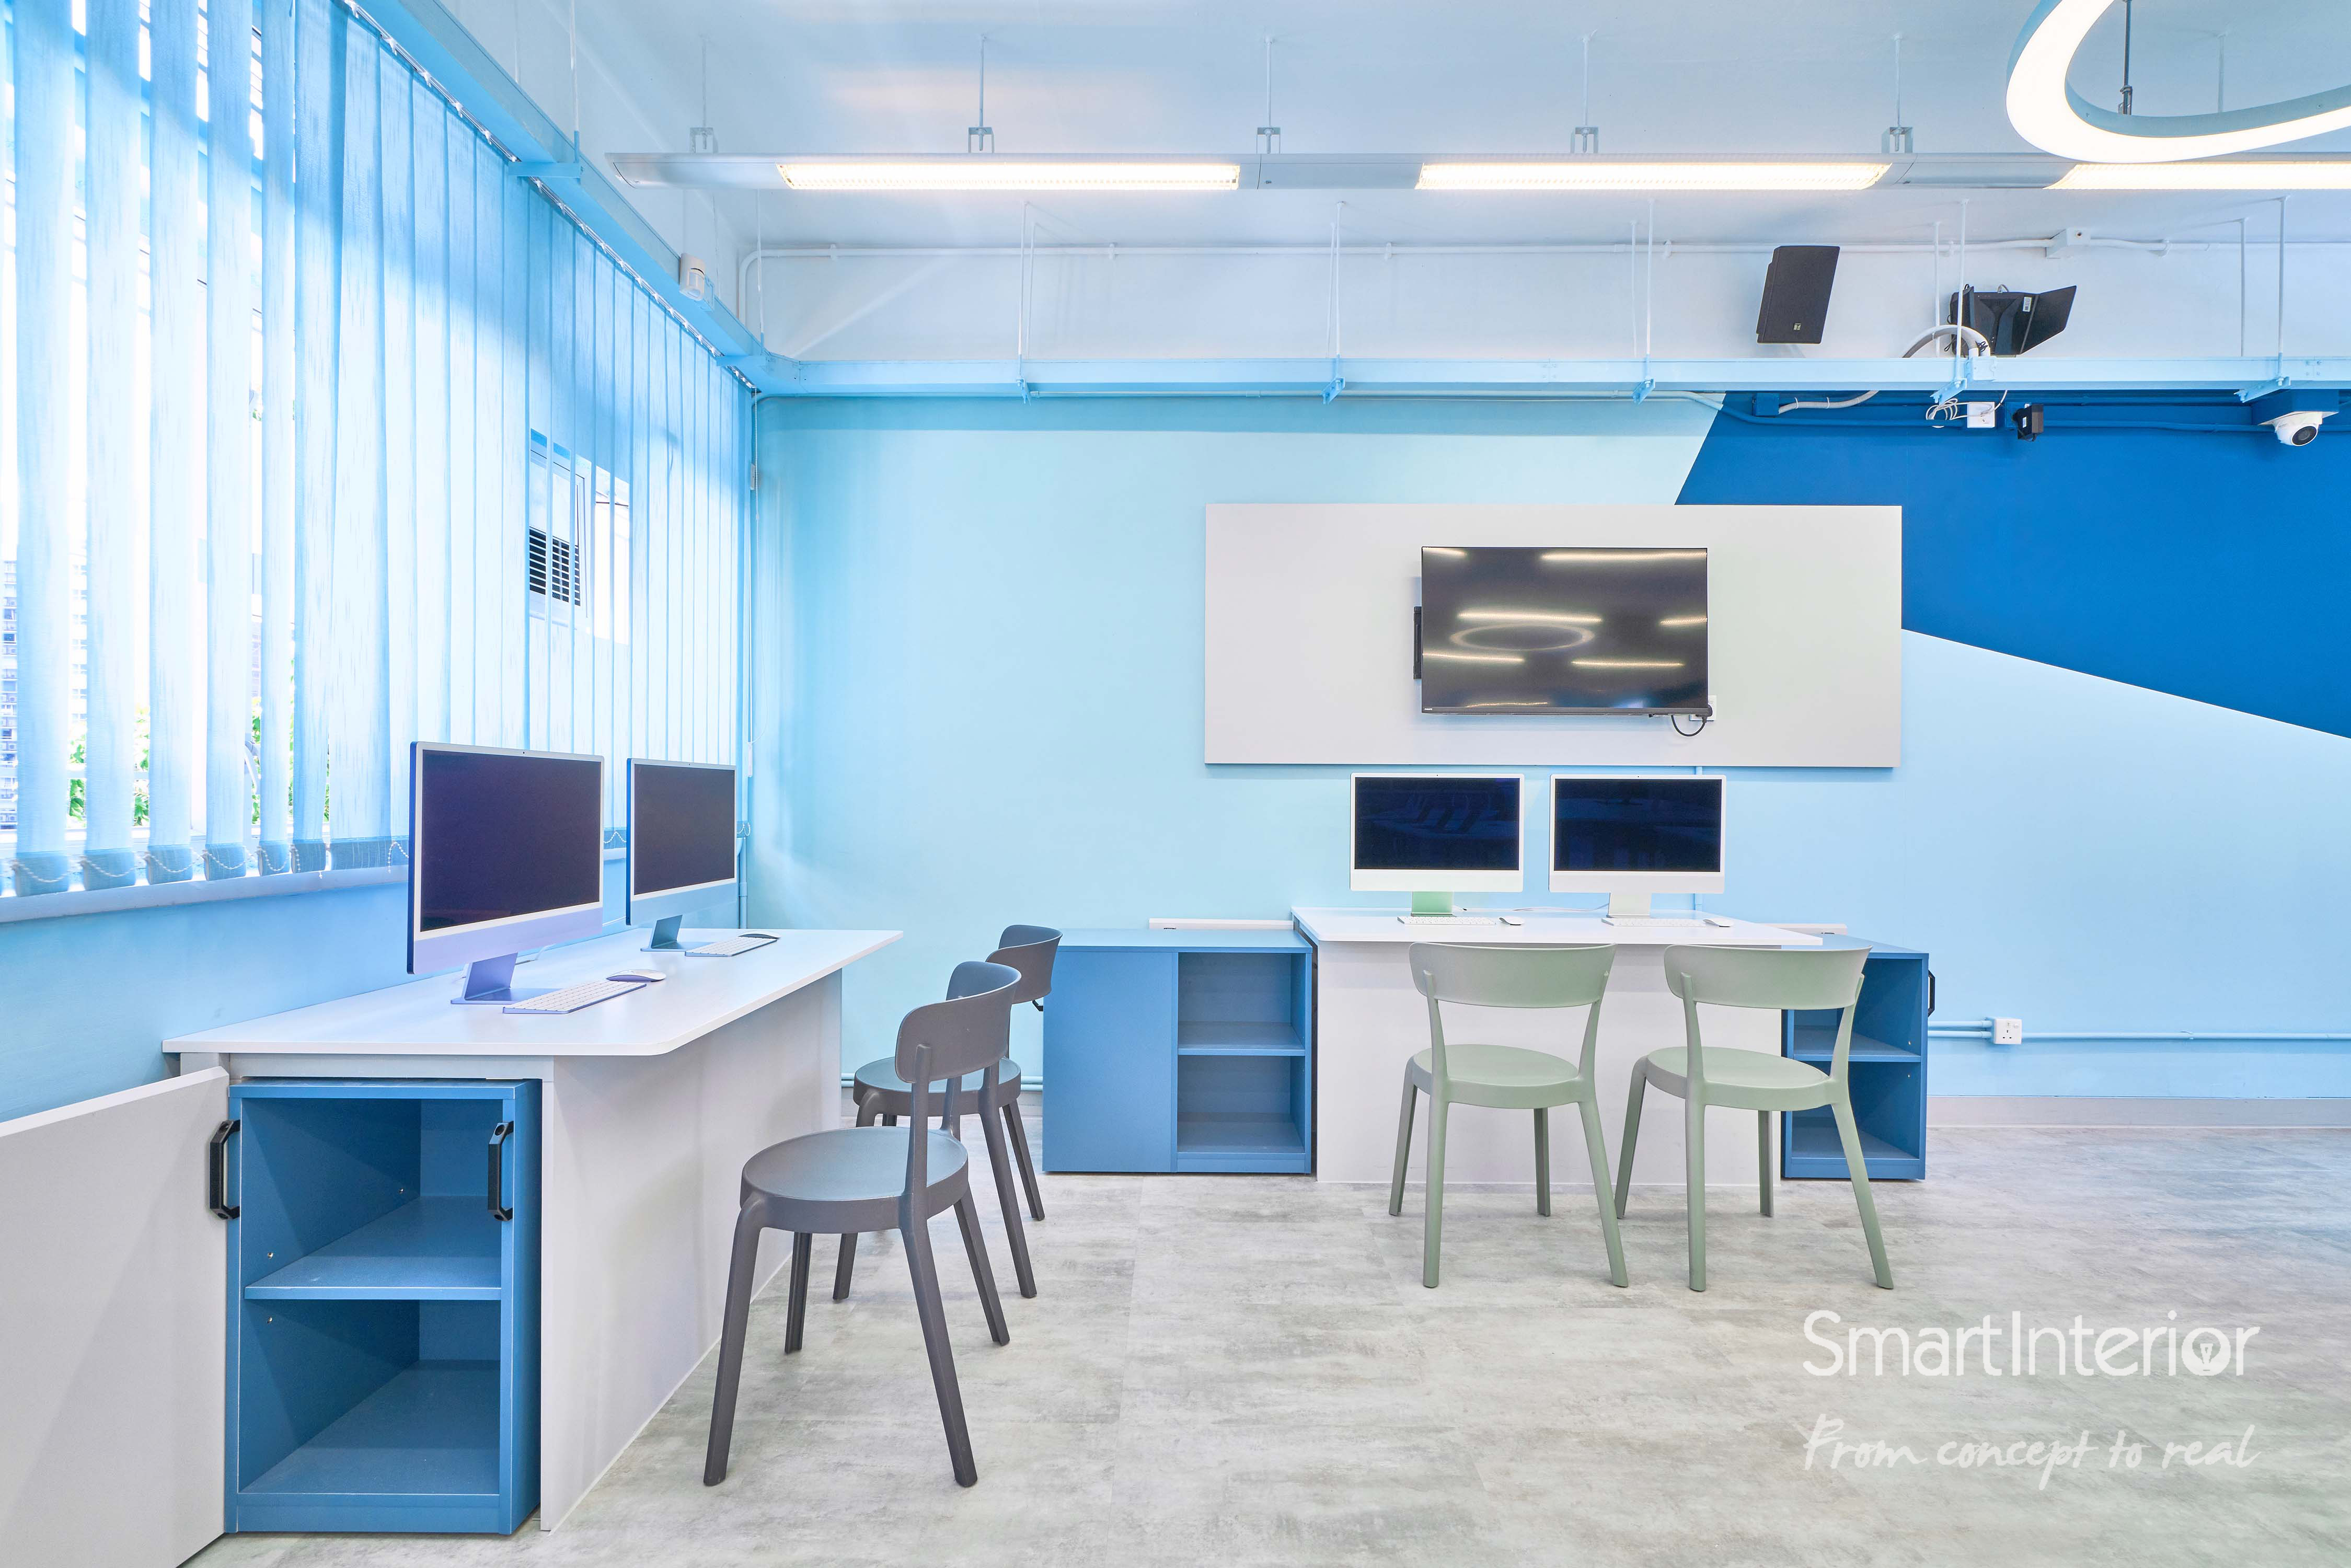 Josephine Kung - Smart Interior Limited - School Innovation Lab